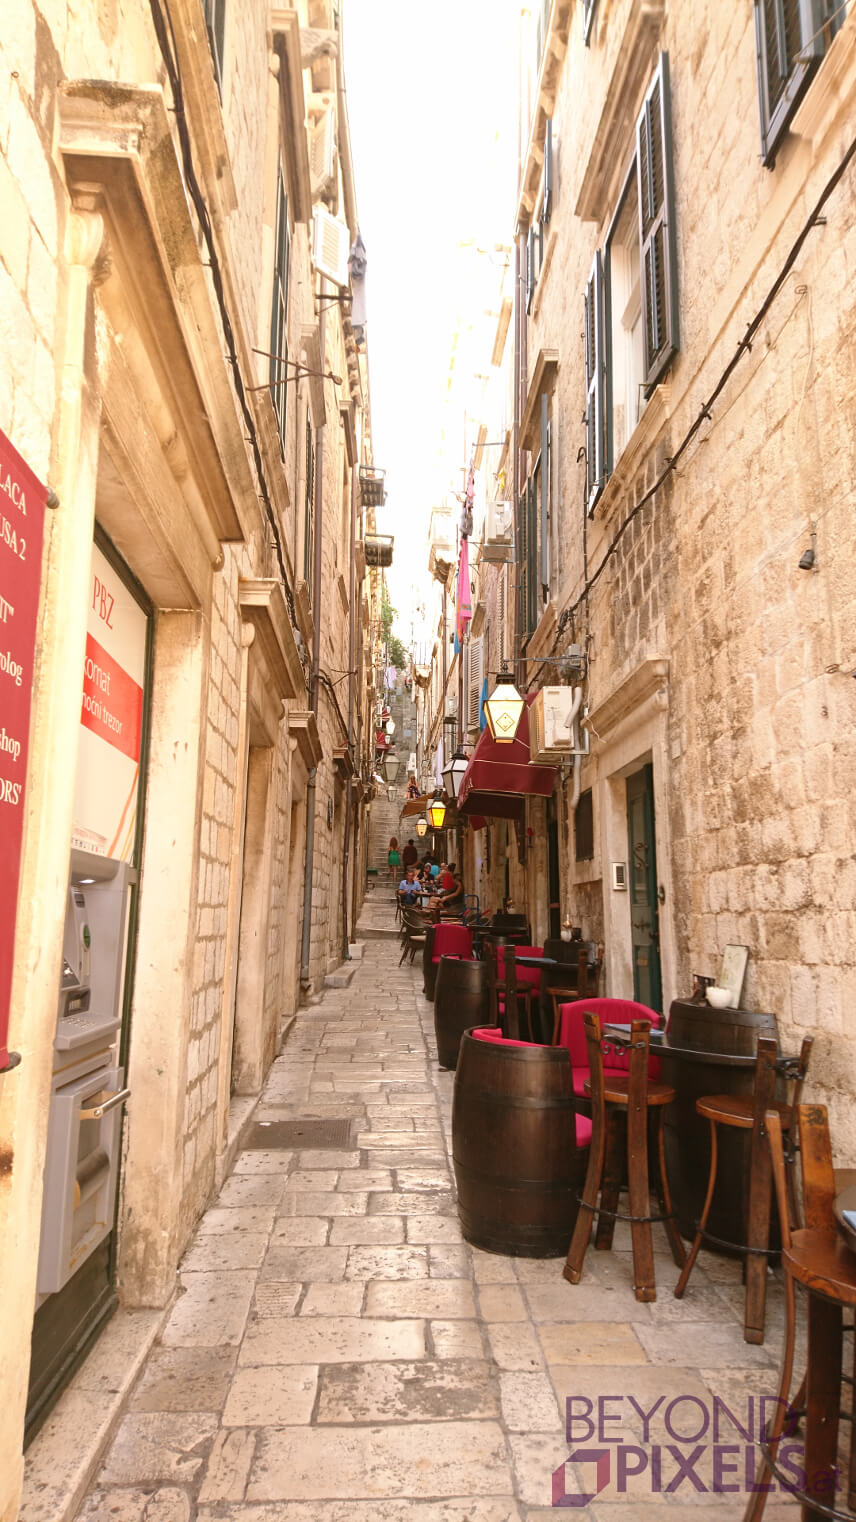 Urlaub in Dubrovnik Gassen Restaurant